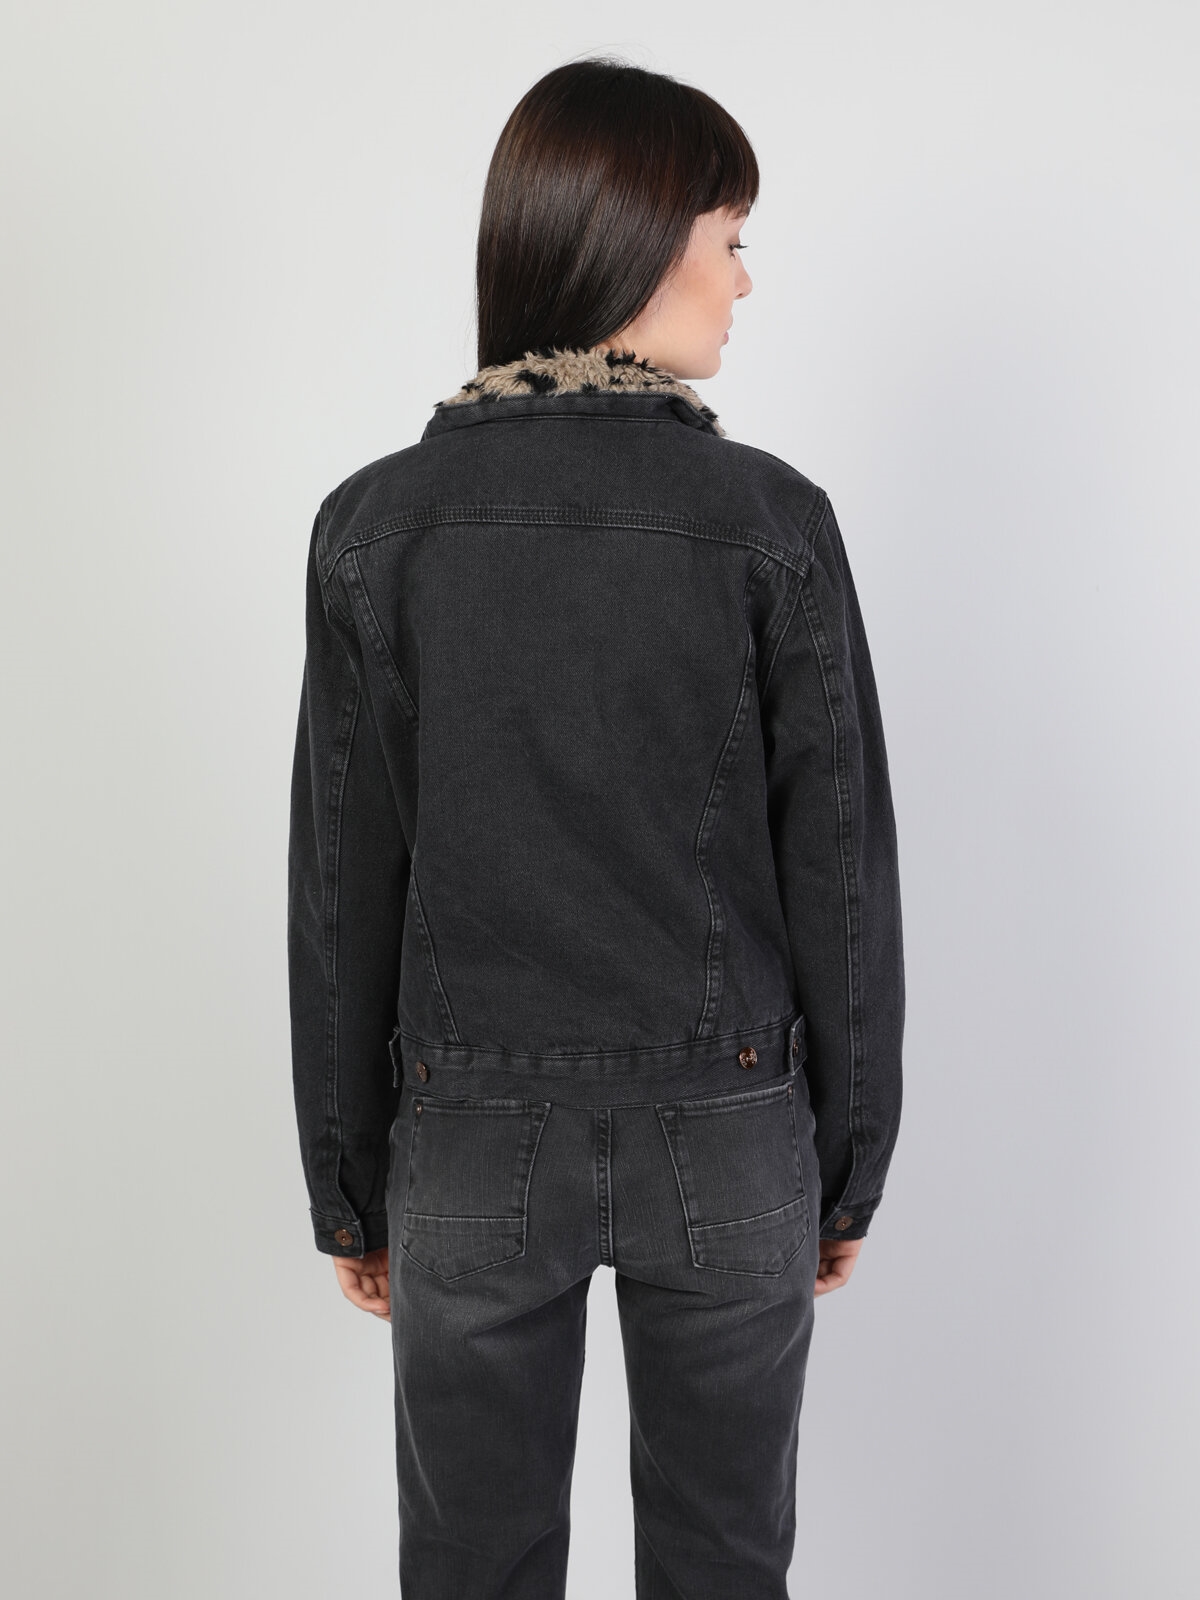 Показати інформацію про Джинсова Куртка Жіноча Чорна Класичного Крою CL1045459